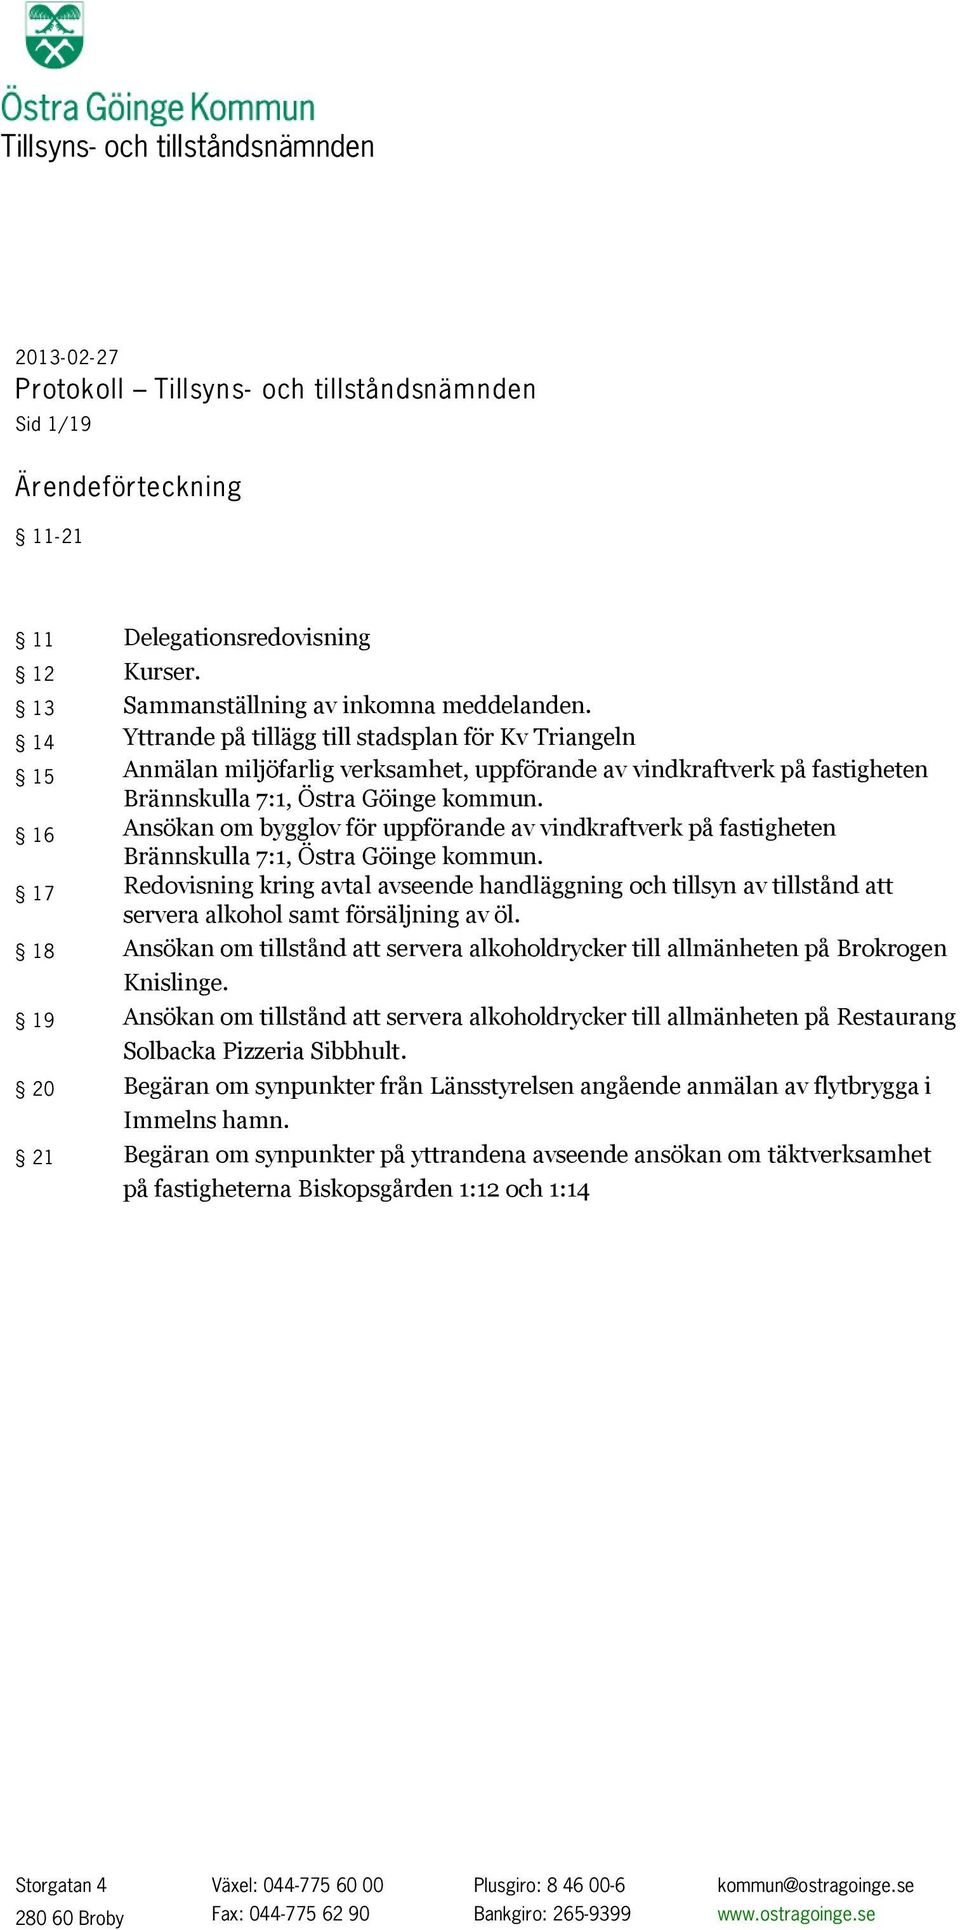 16 Ansökan om bygglov för uppförande av vindkraftverk på fastigheten Brännskulla 7:1, Östra Göinge kommun.